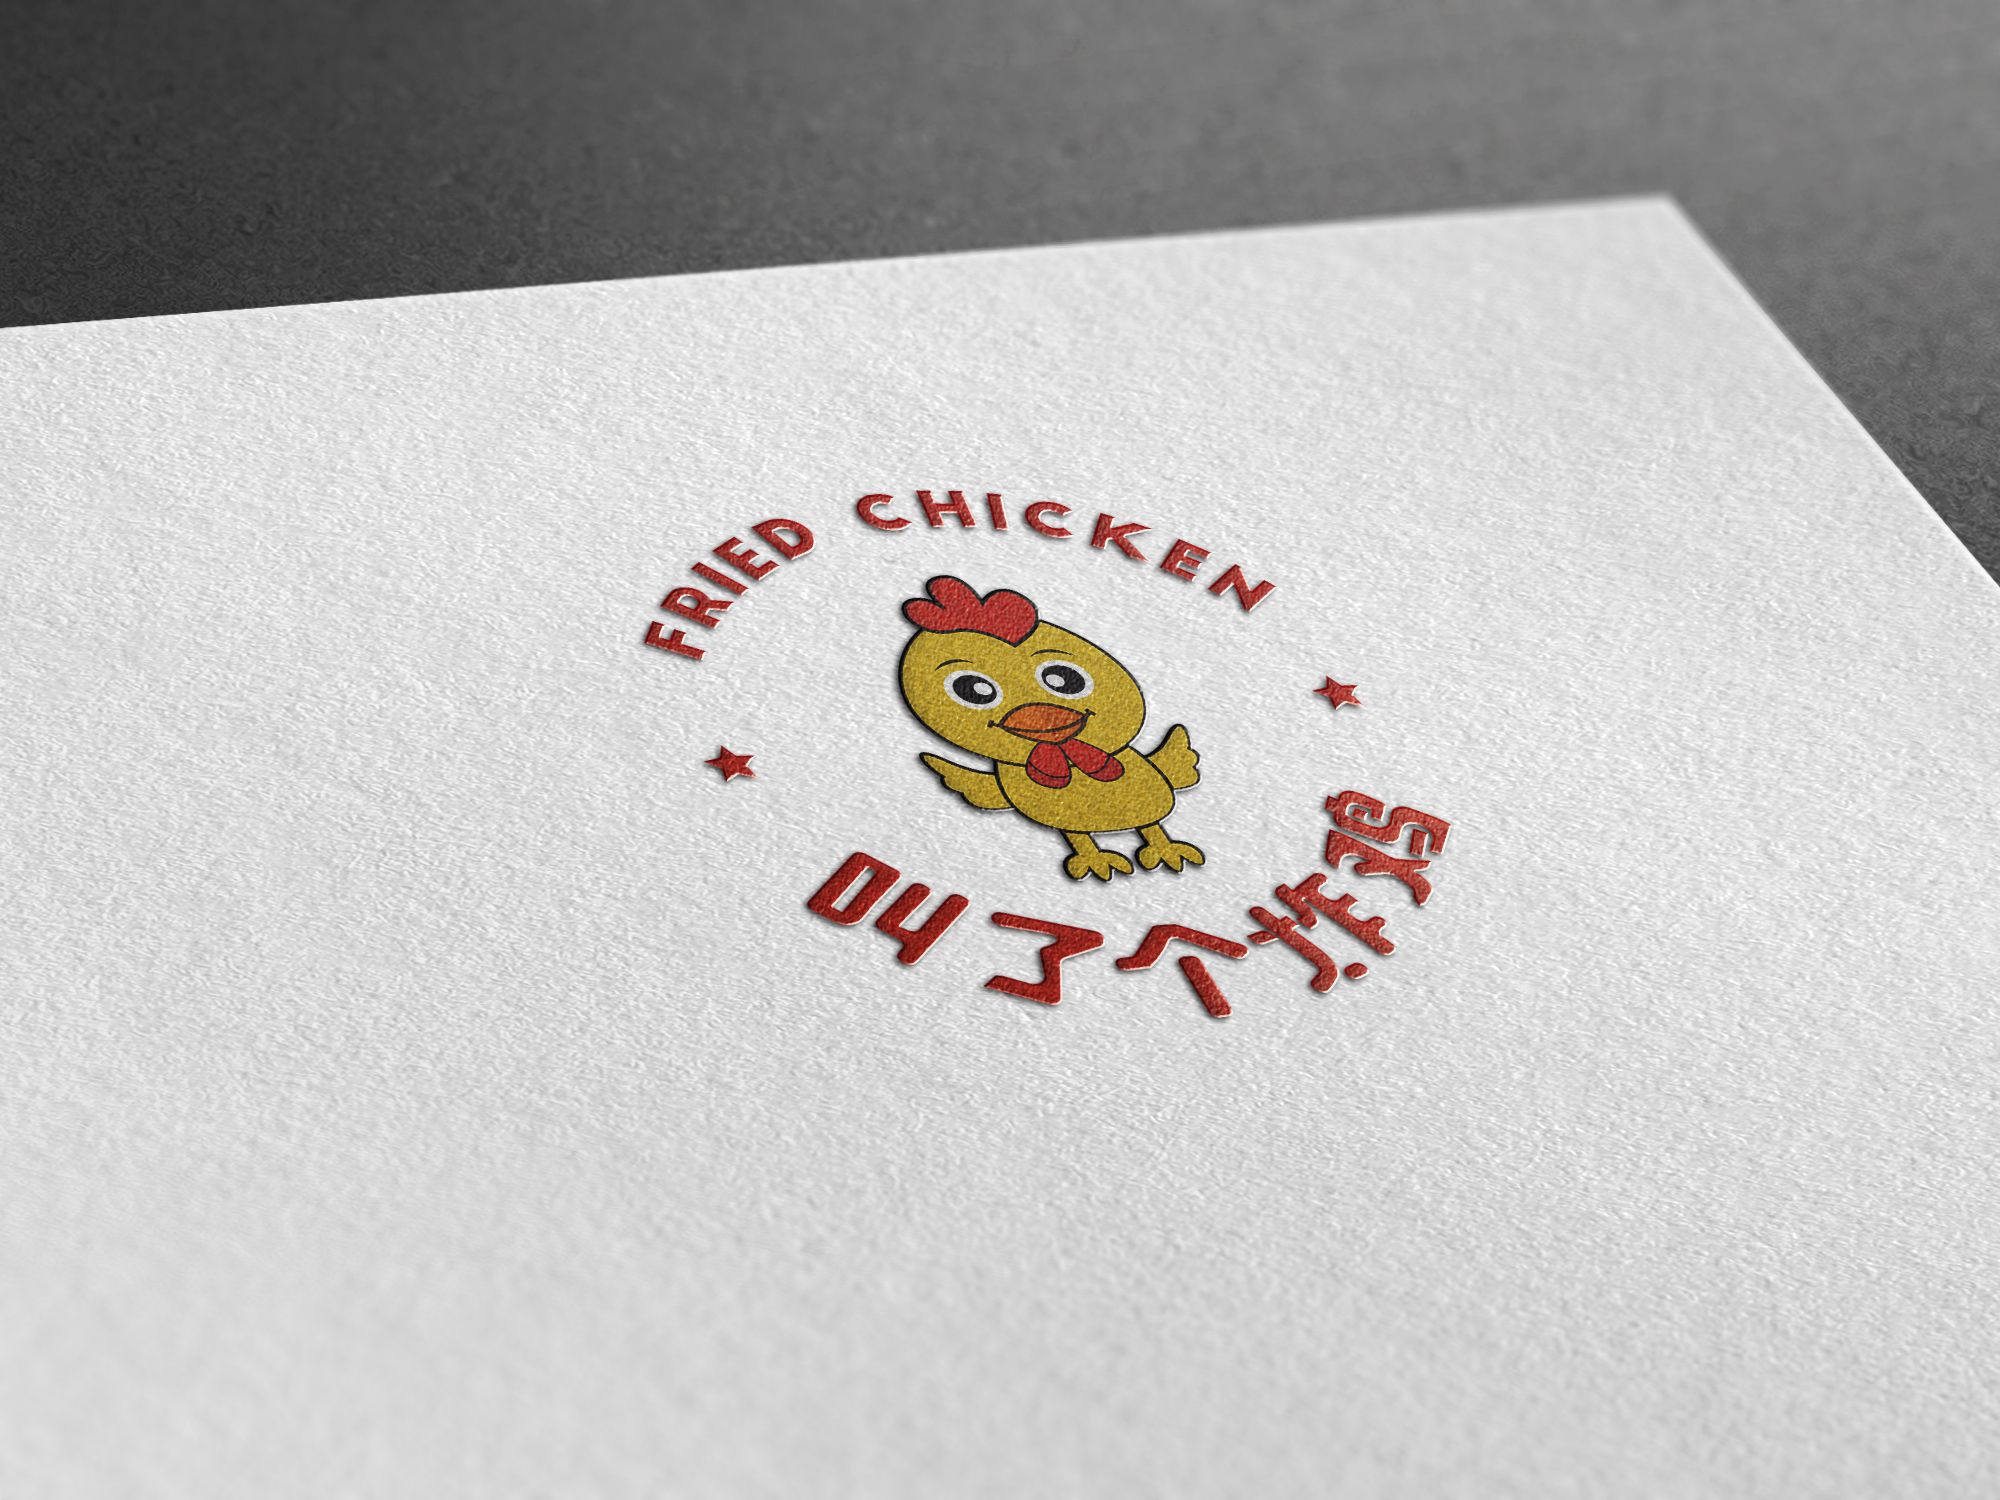 日式拉面品牌取名(叫了个炸鸡)4